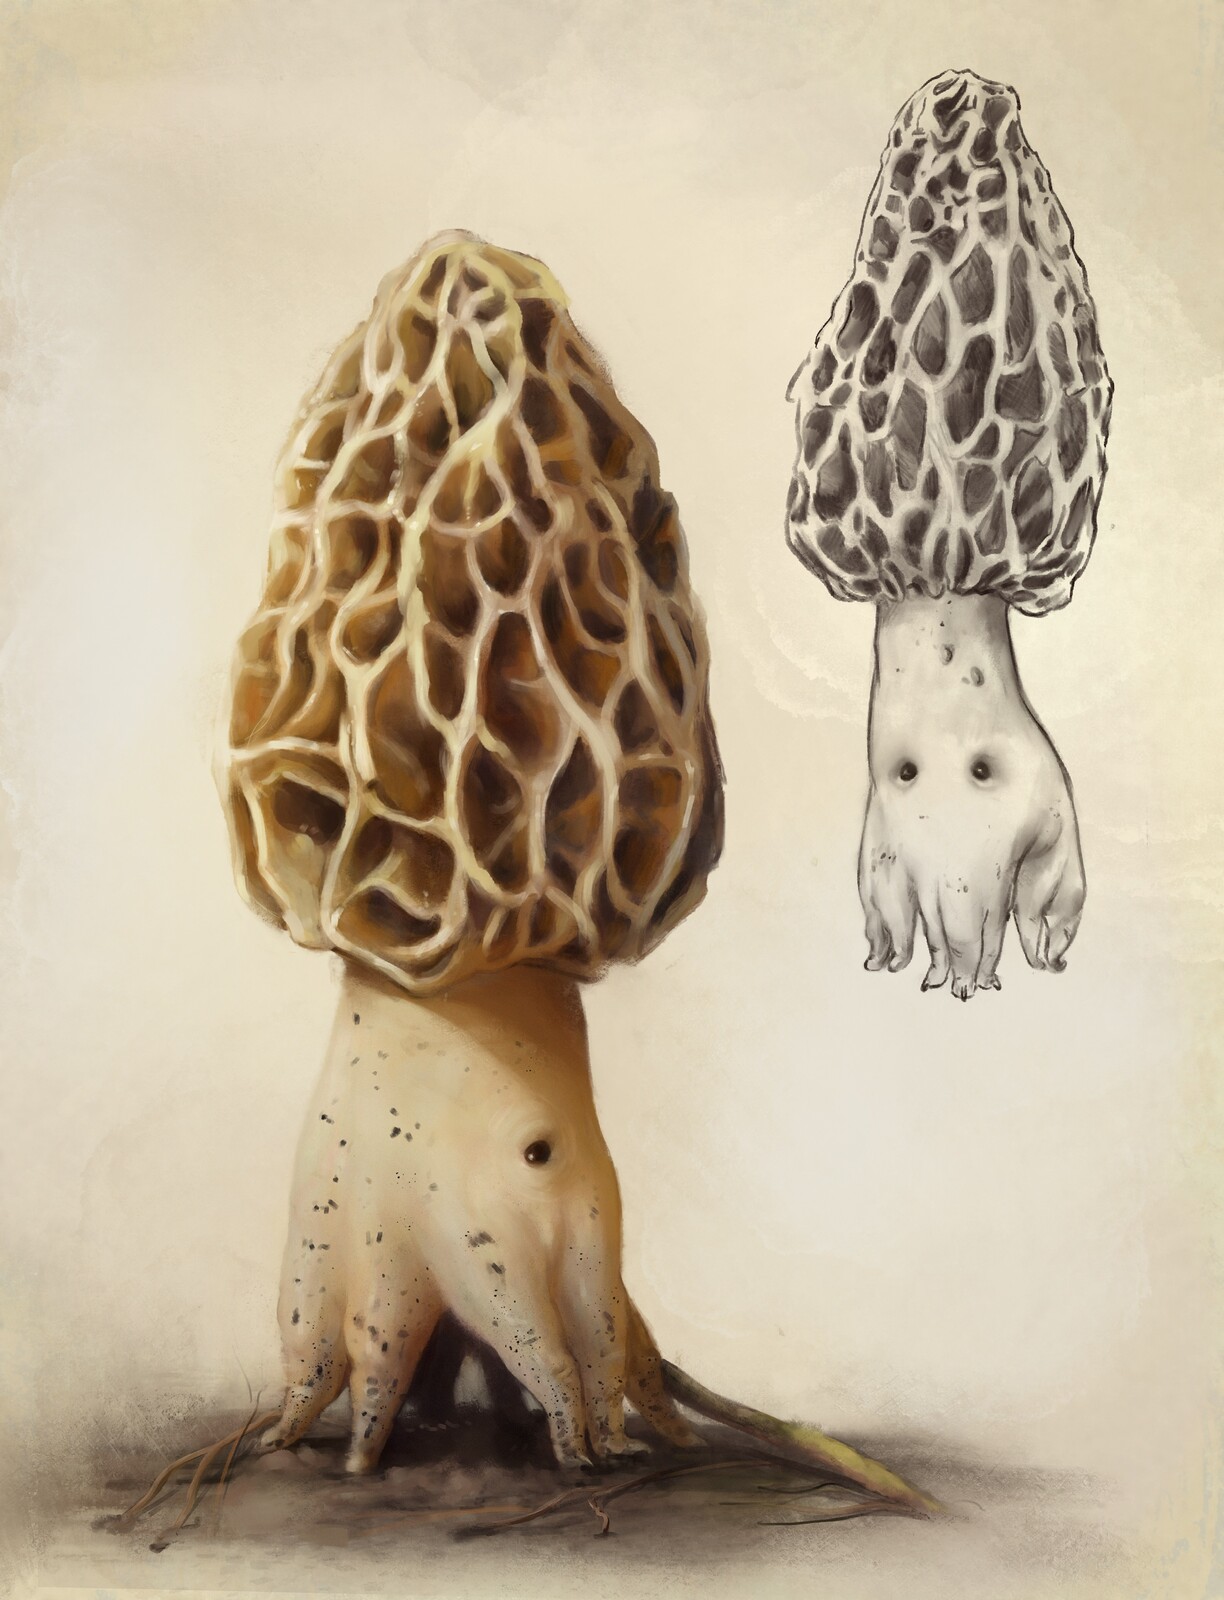 Mushroom creature 